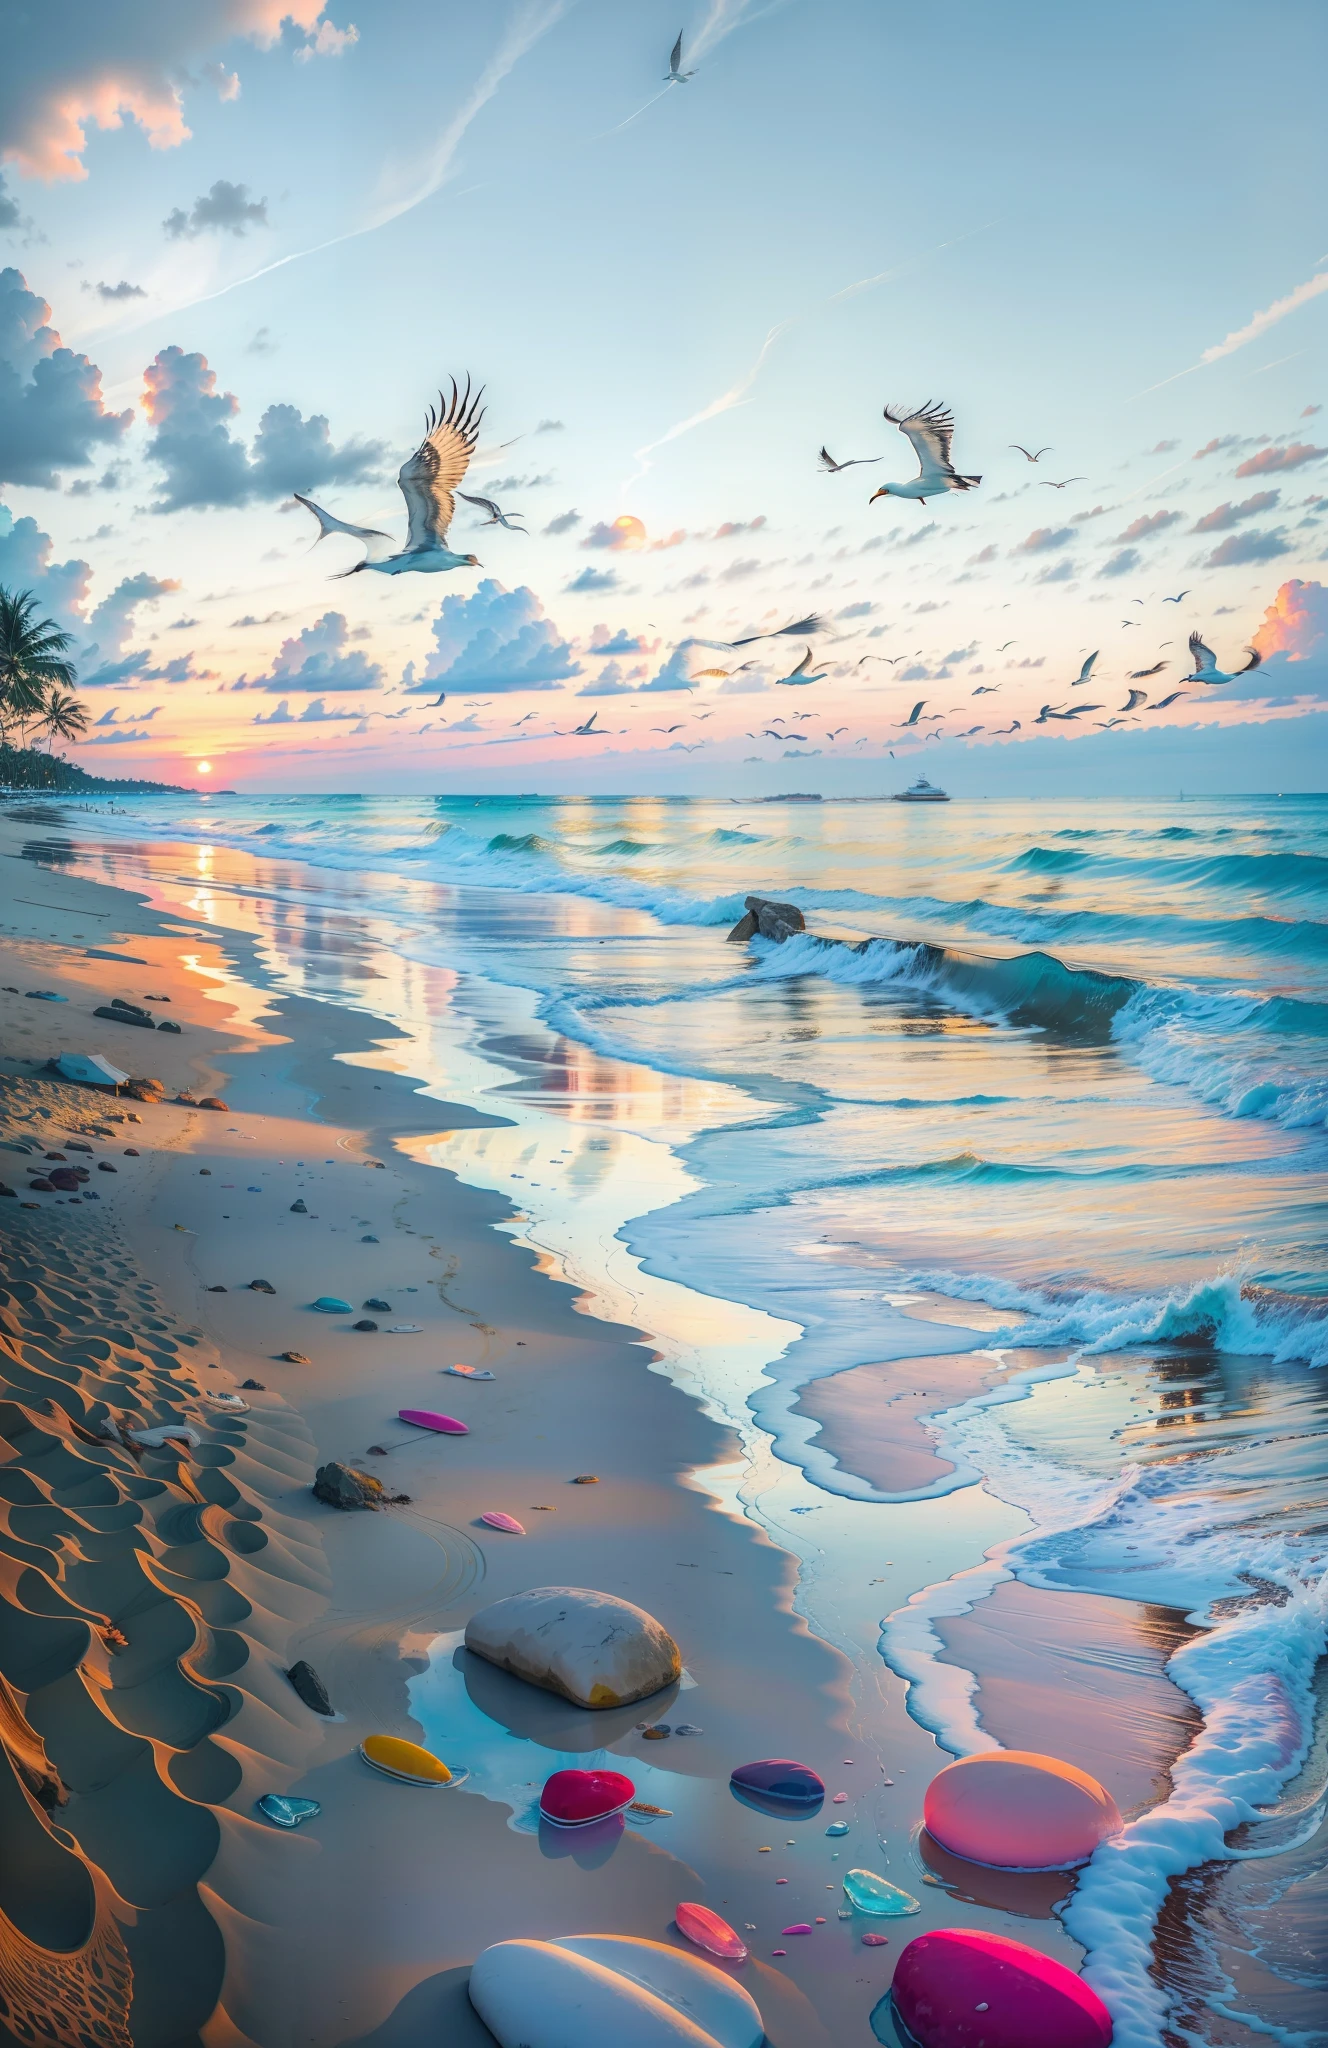 海灘上佈滿了色彩繽紛的透明光滑的石頭: 1.5, 海灘上的日落絕對令人著迷，橙色的混合, 天空中的粉紅色和黃色. 水清澈見底, 輕輕地親吻海岸, 白色的沙灘一望無際. 場面動感十足，令人嘆為觀止, 海鷗在高空翱翔，棕櫚樹輕輕搖曳. 沉浸在平靜的氛圍中，讓寧靜包圍您.